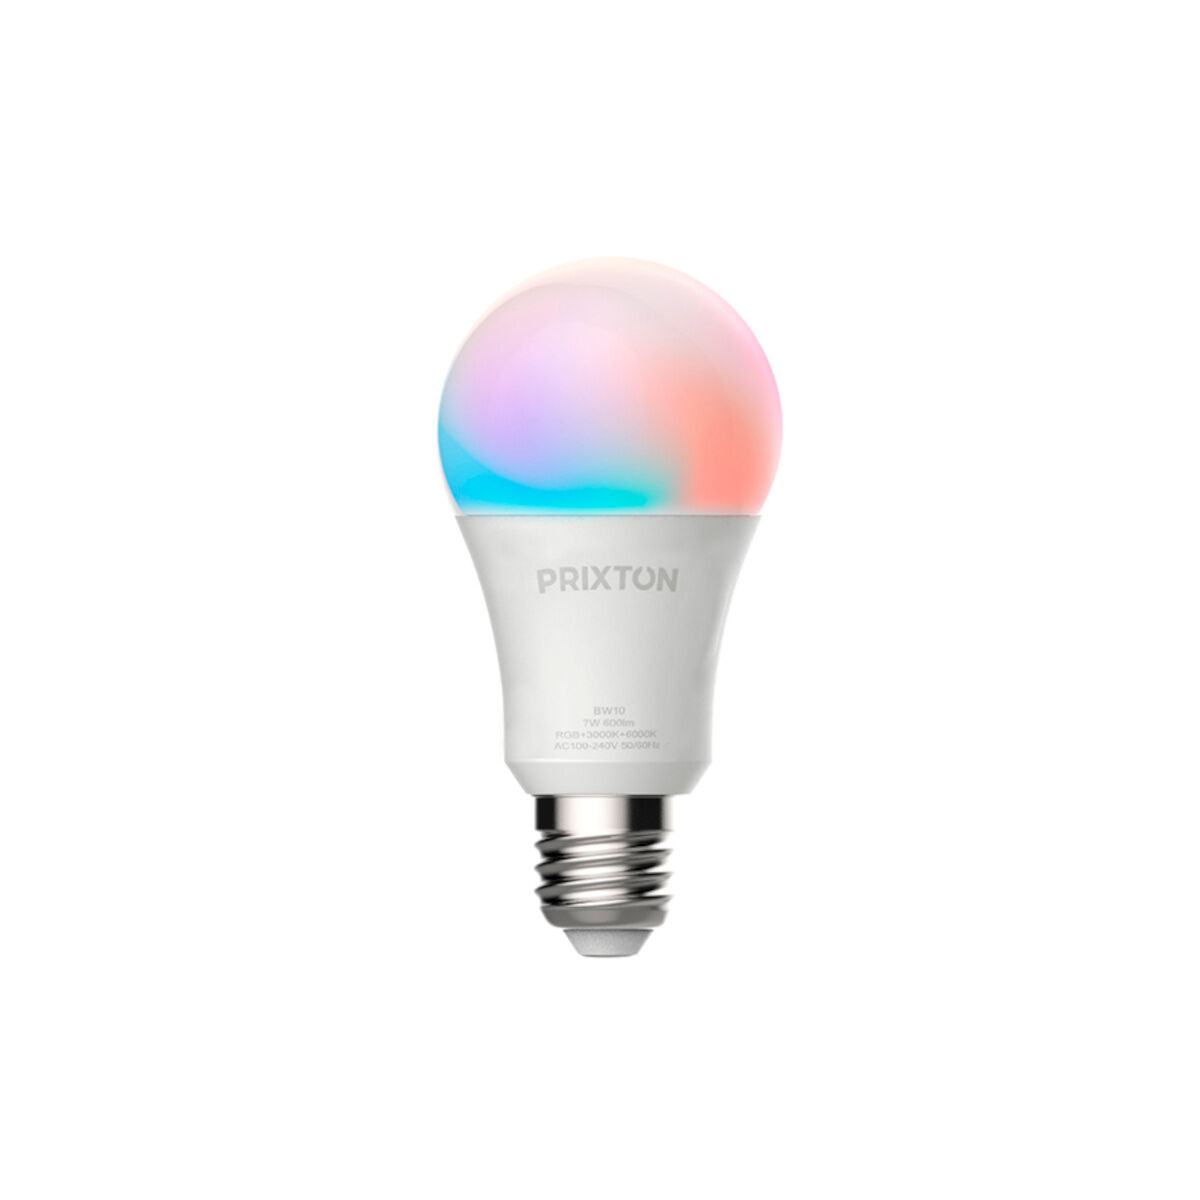 Prixton Smart Light Bulb